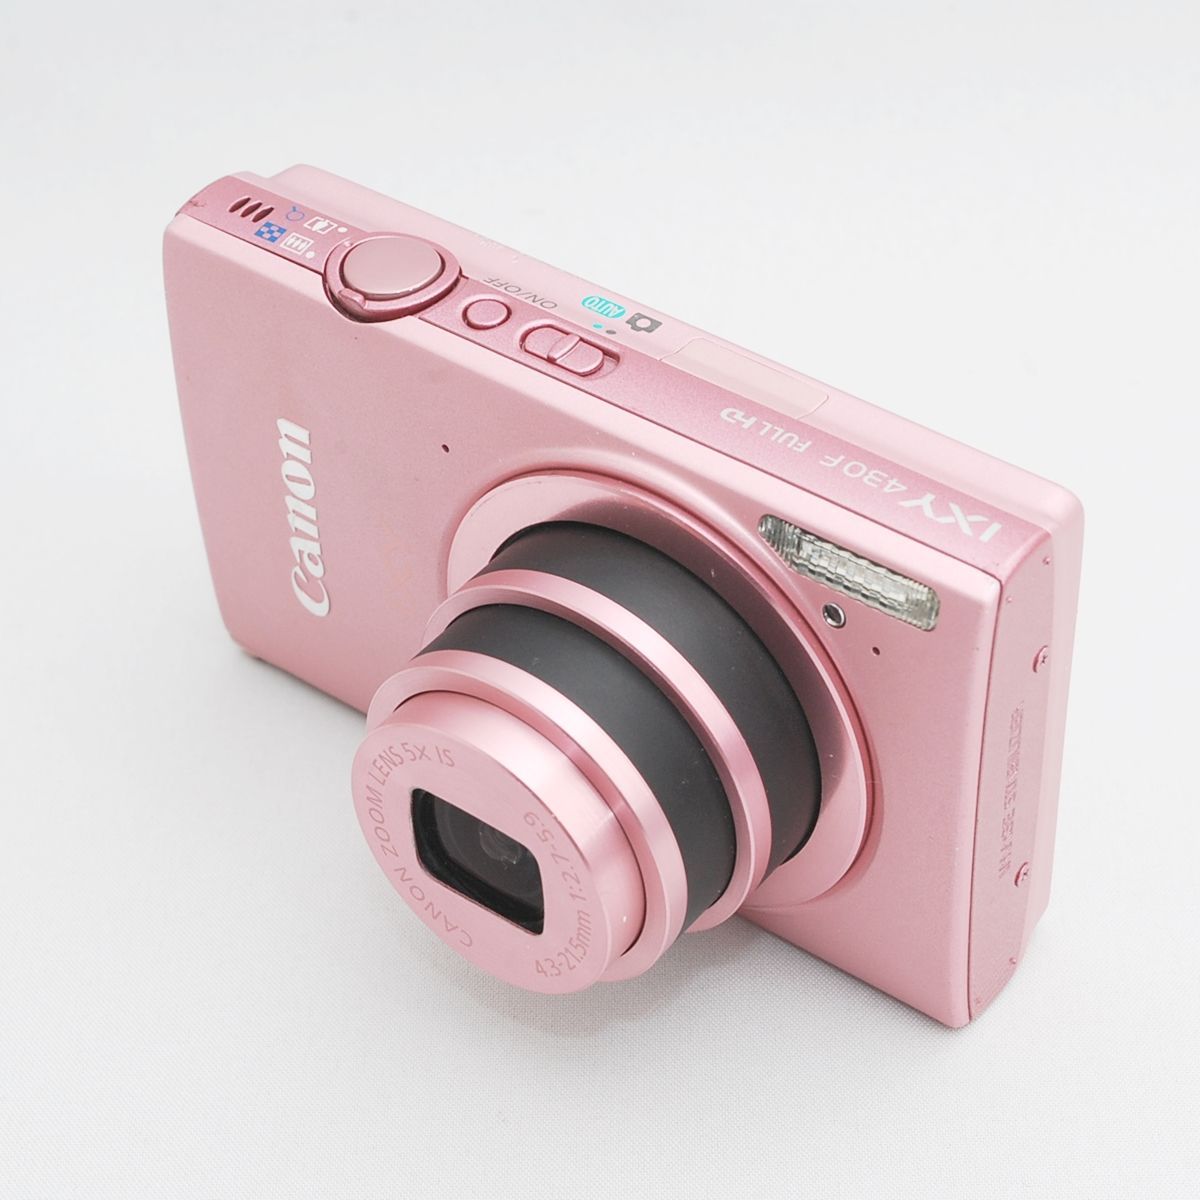 デジカメデジカメ Canon IXY 430F ピンク 品